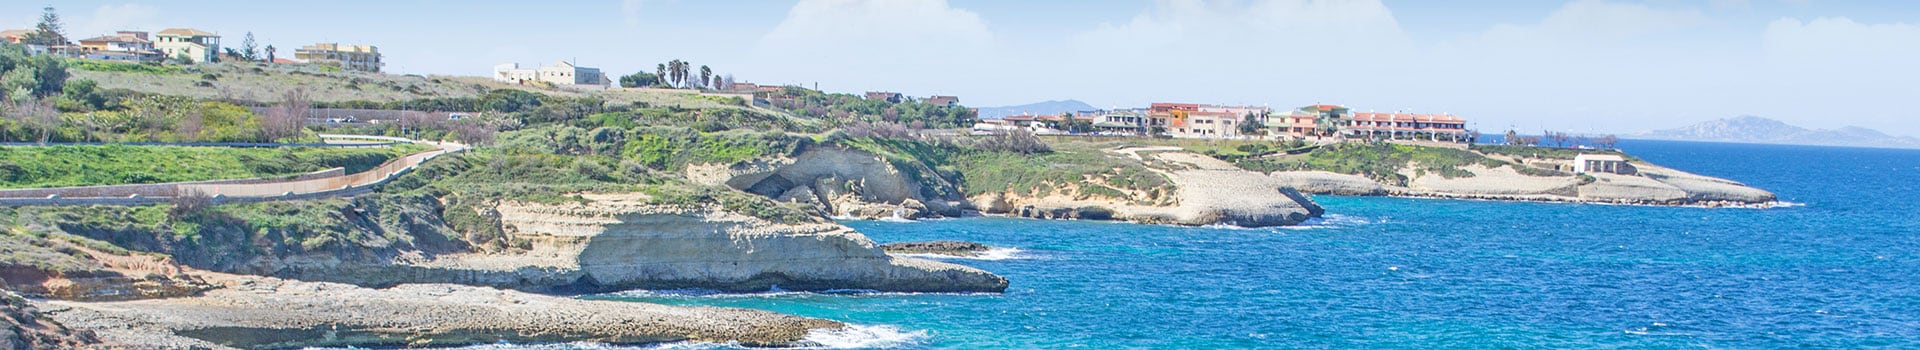 Billets de Bateau de Malte à Porto Torres (Sardaigne)